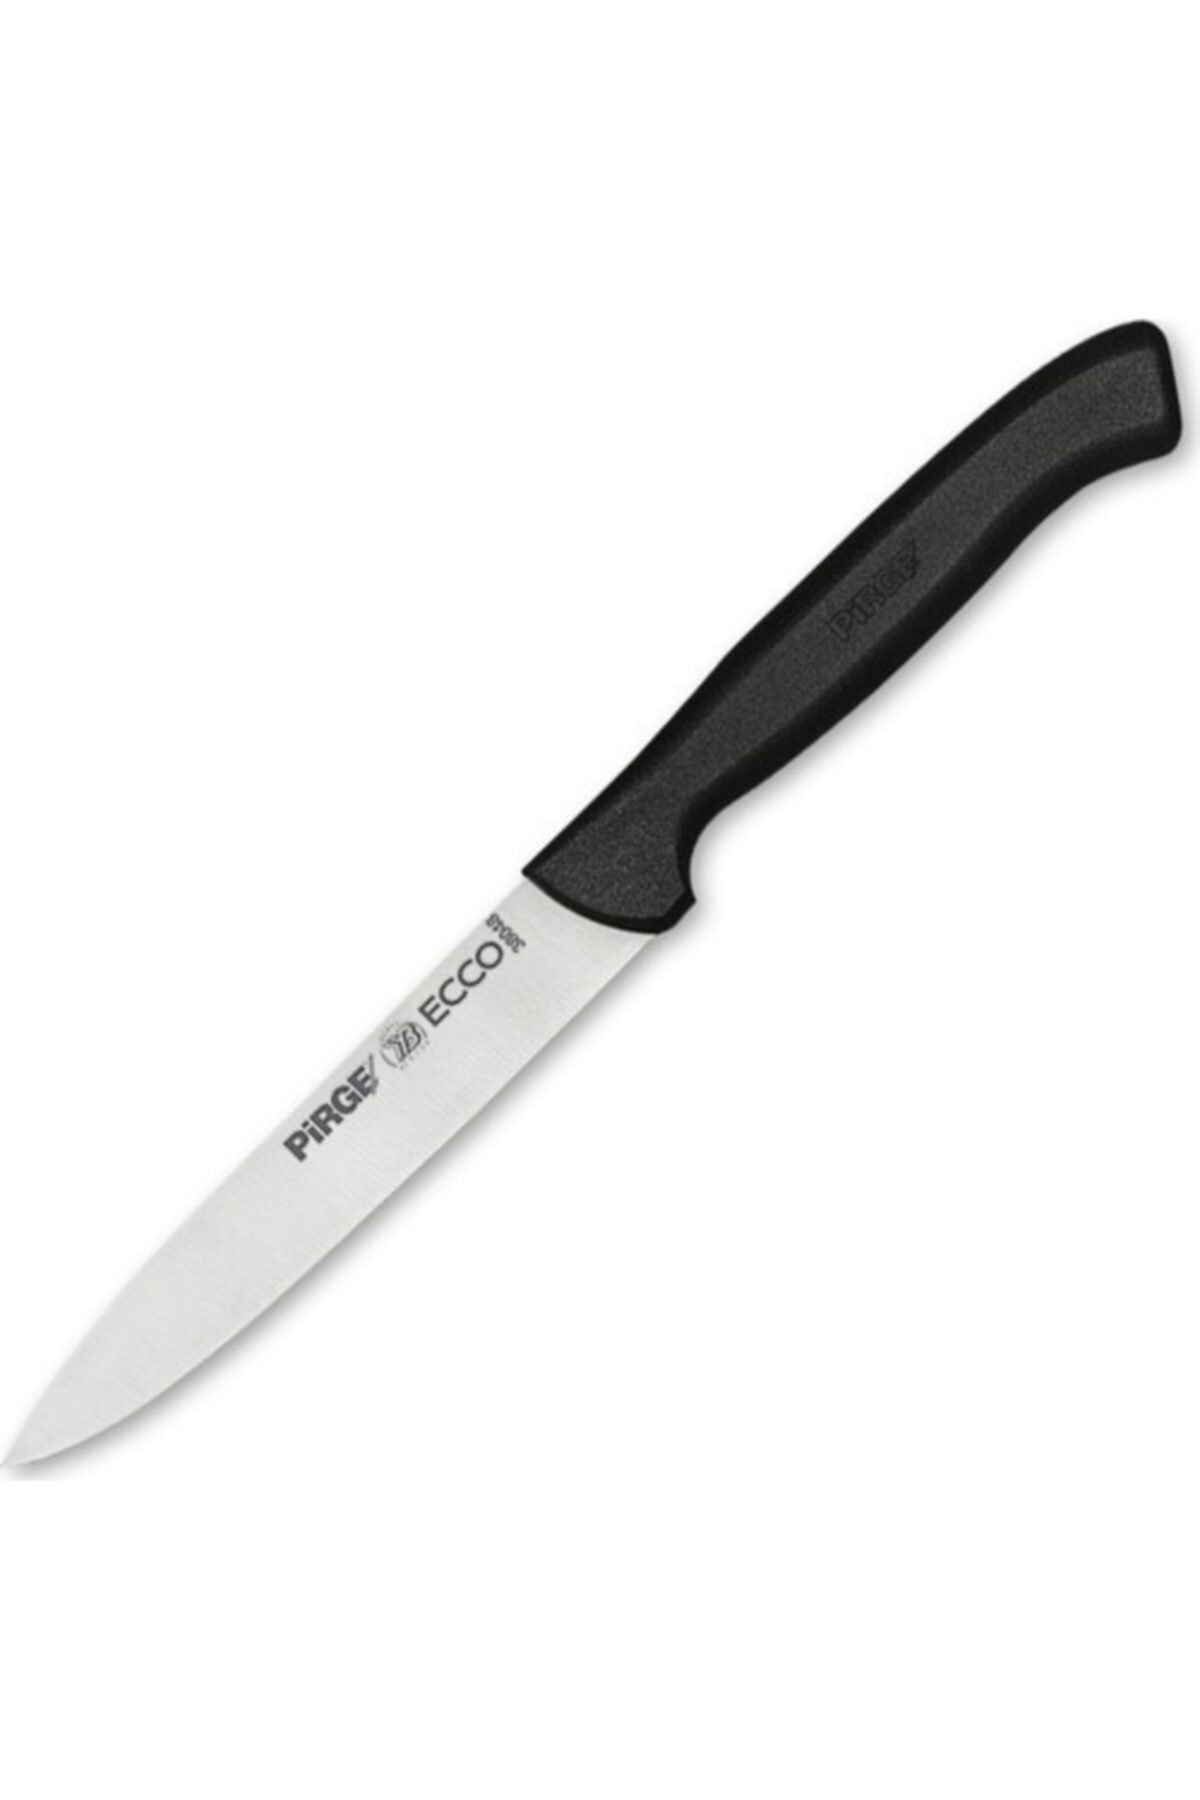 Pirge Ecco Sebze Bıçağı Sivri 12 Cm